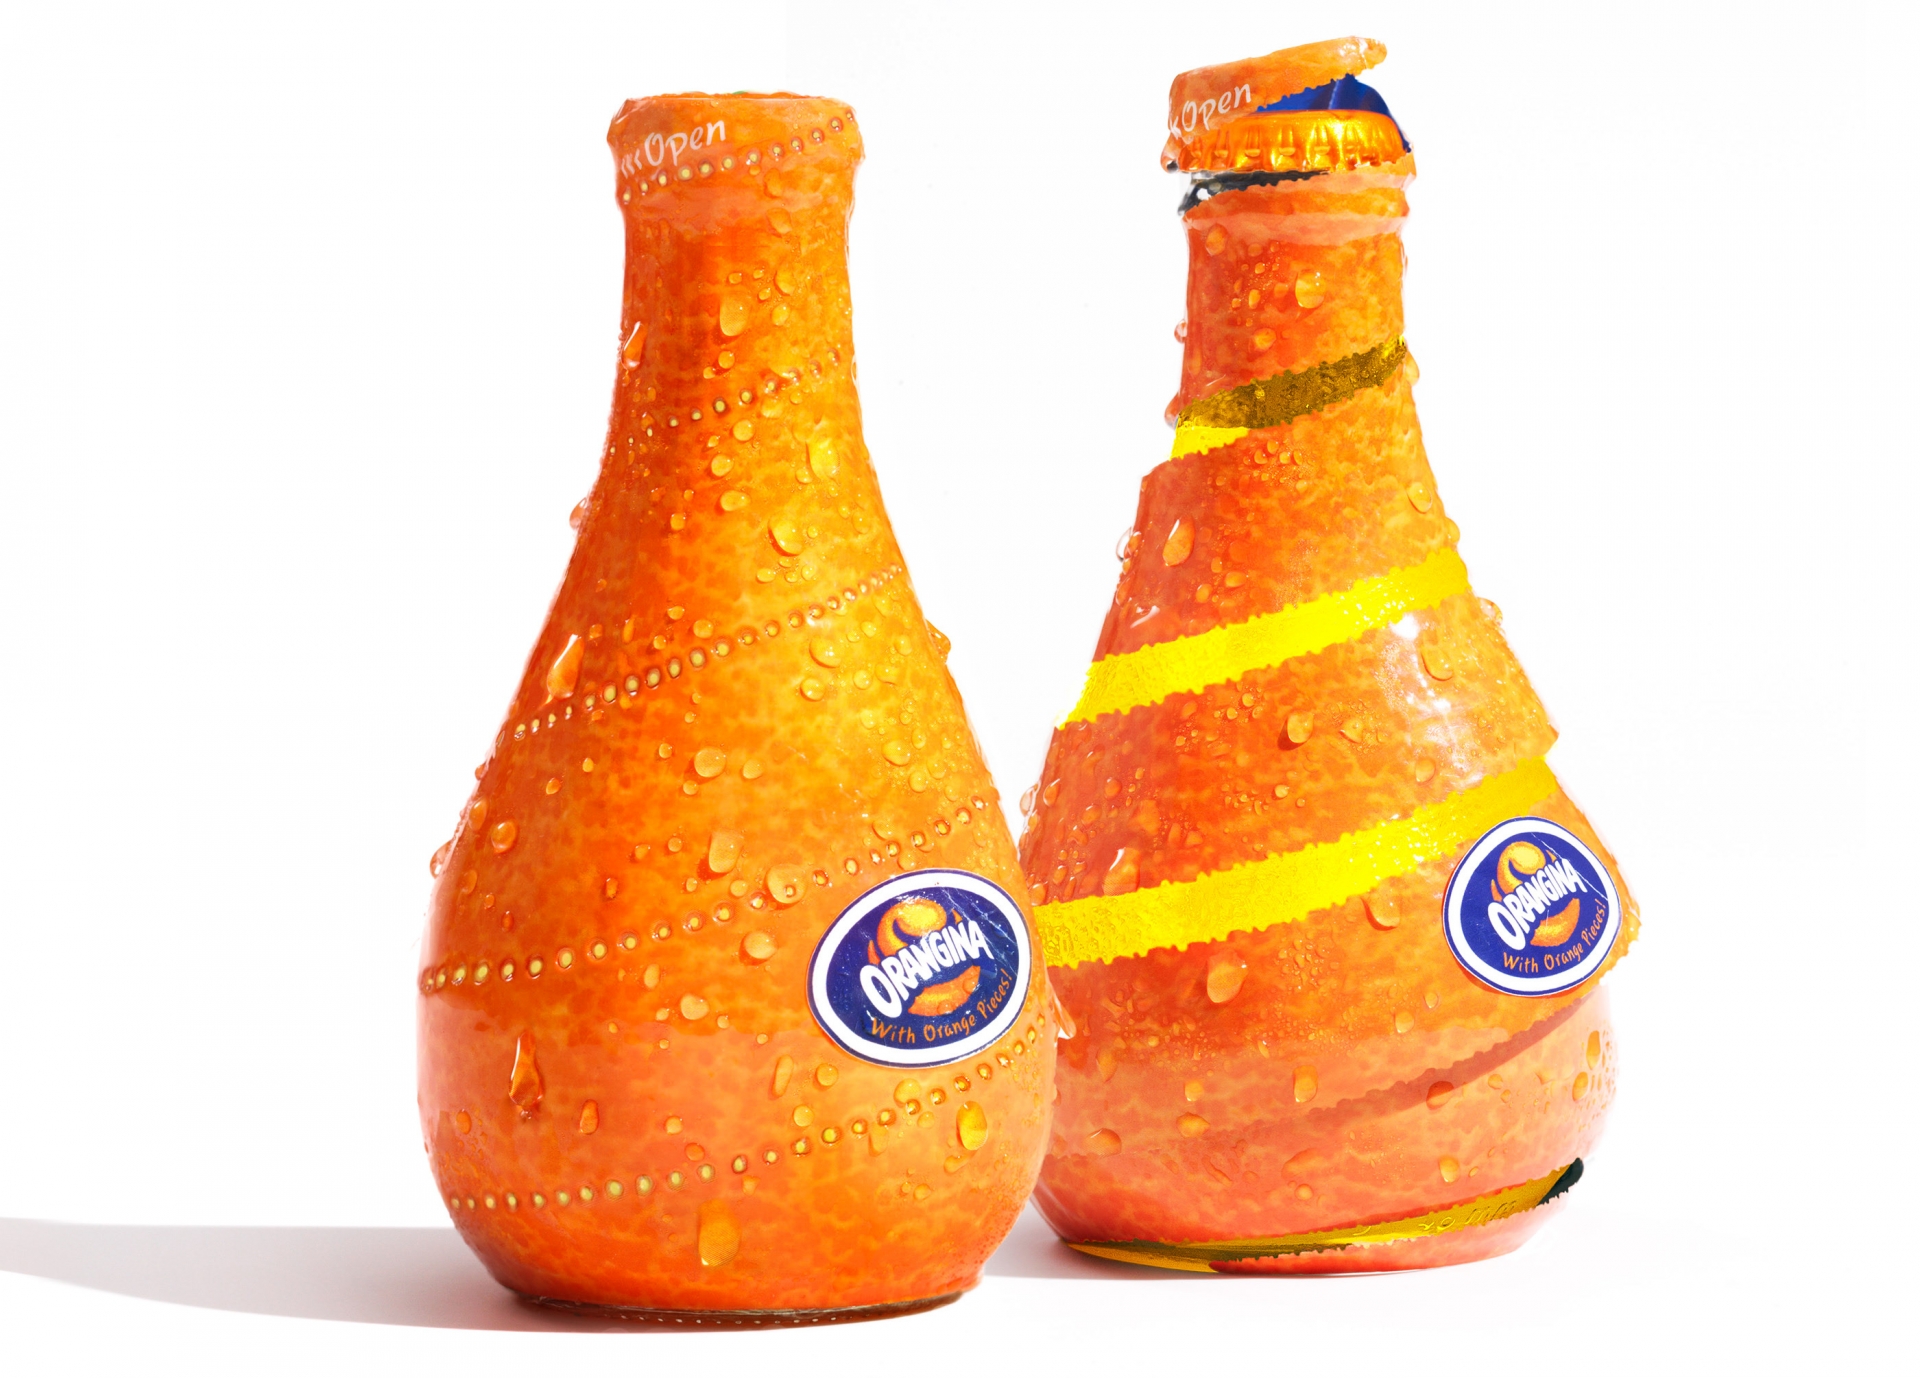 Chai nước cam ép đóng chai này trở nên hấp dẫn hơn nhiều với phong cách xé vỏ tương tự như việc bạn đang bóc trái cam vậy.